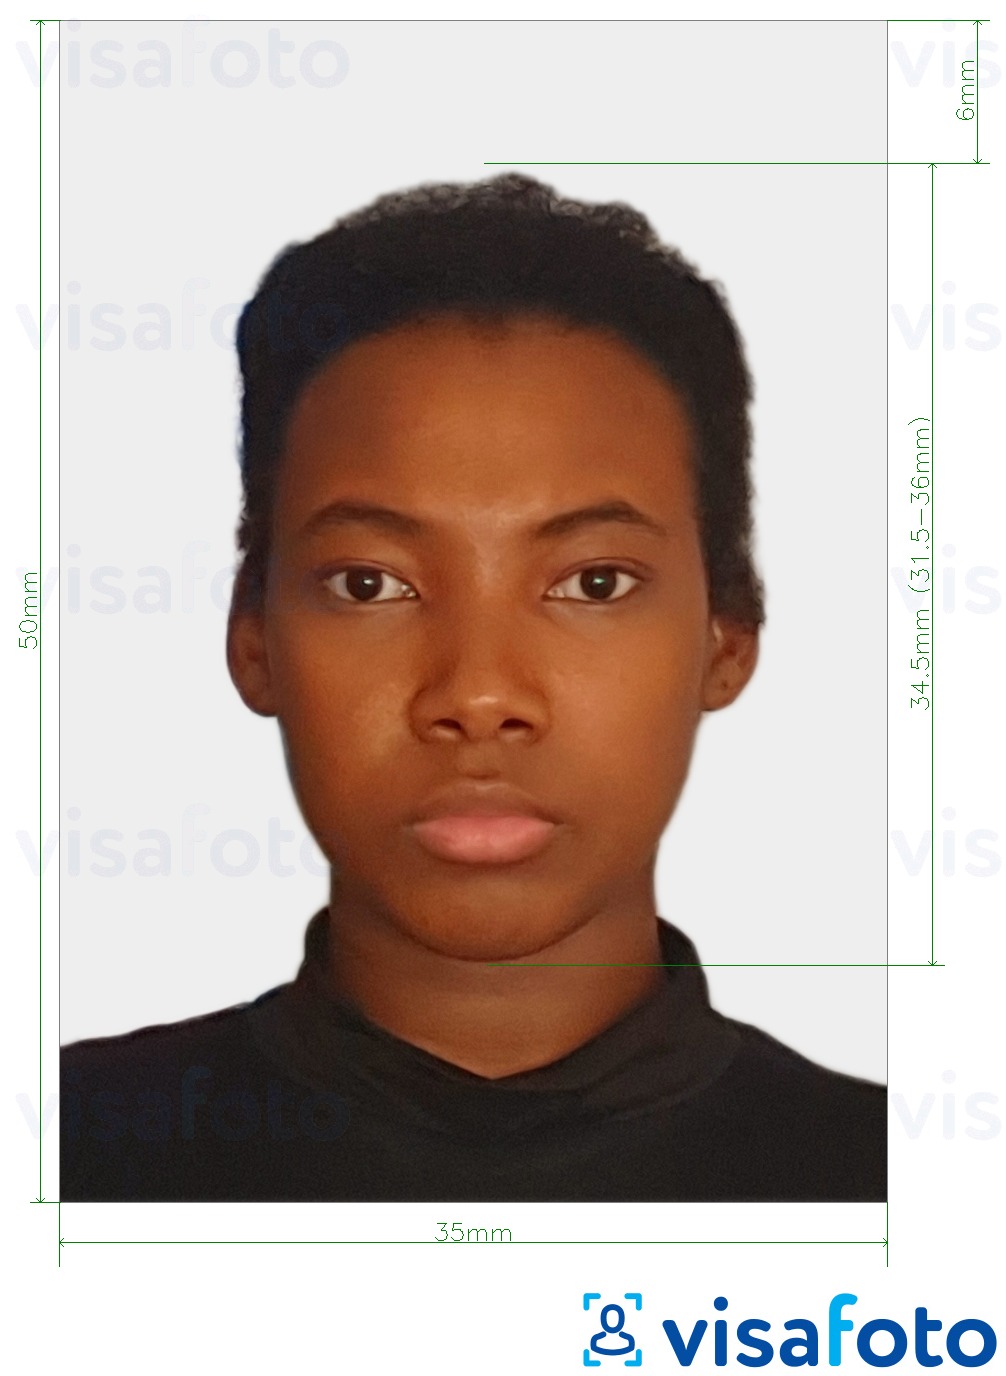 Primjer fotografije za Surinamska putovnica 50x35 mm s točno određenom veličinom